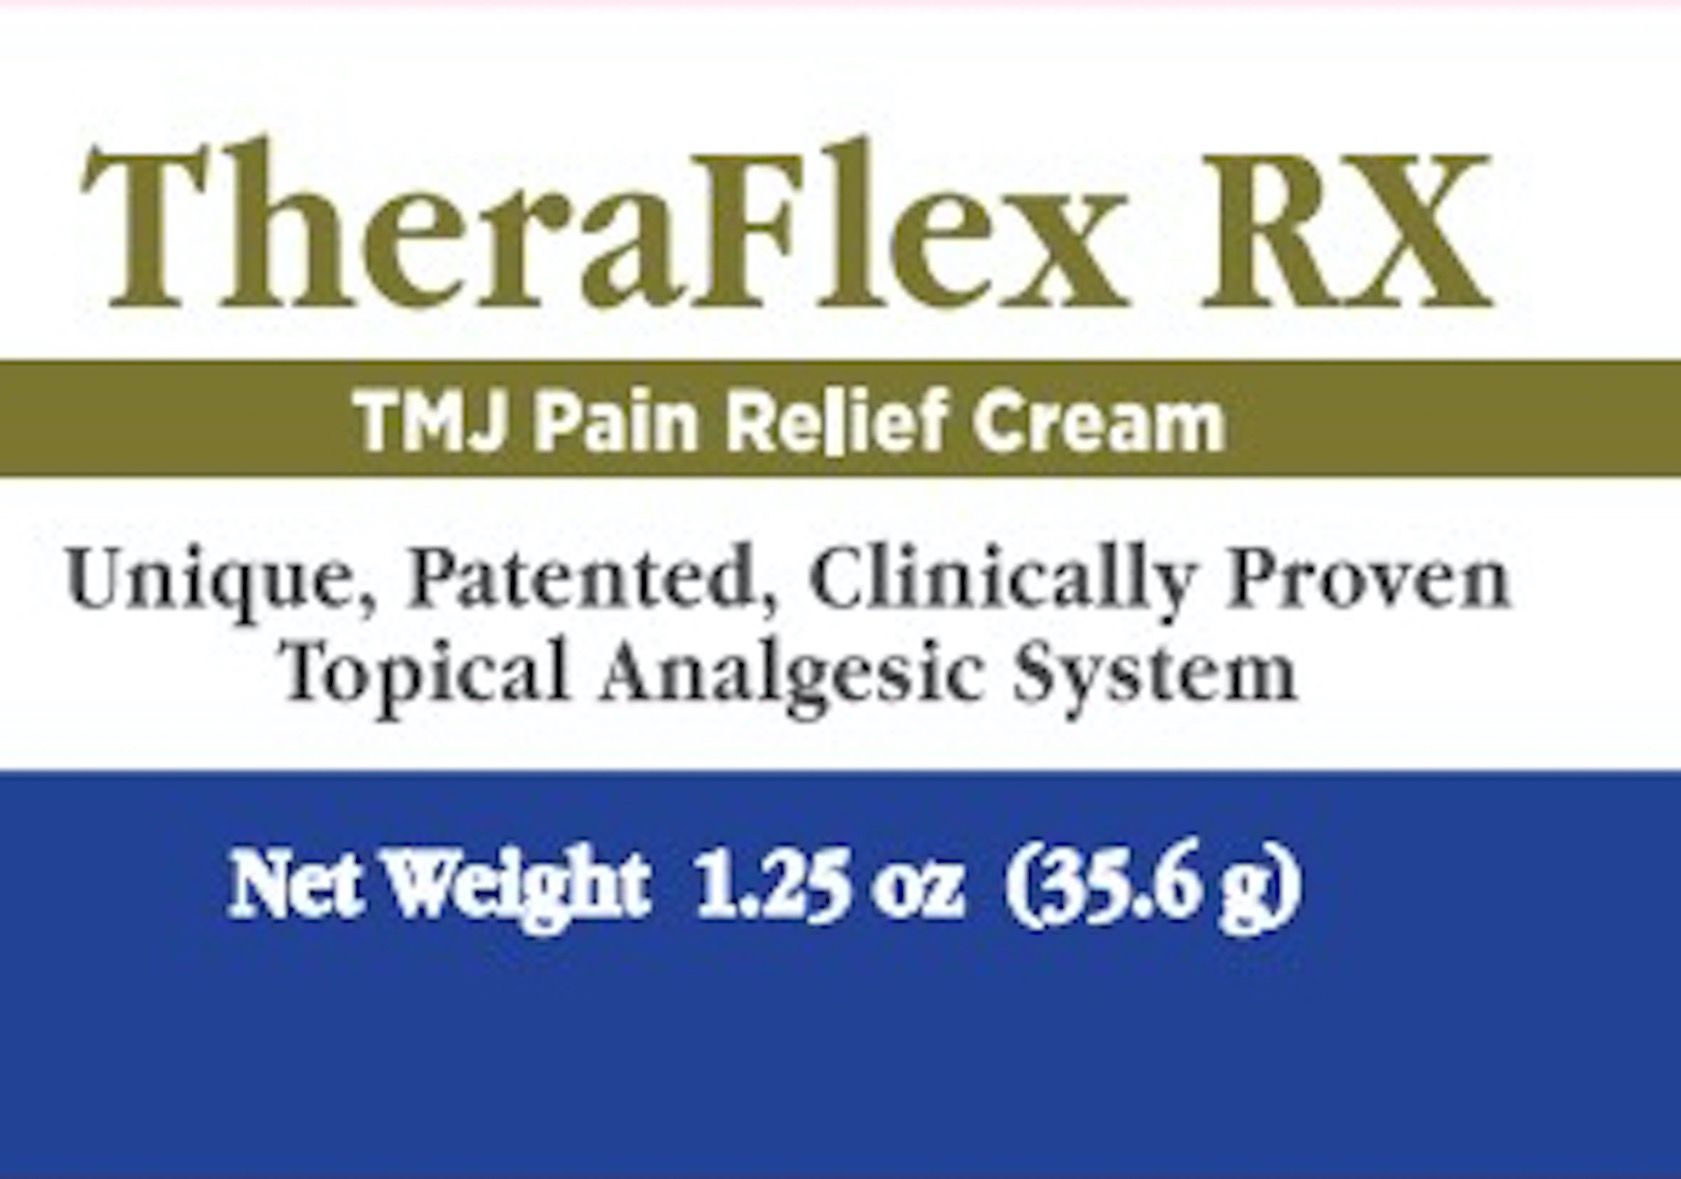 Theraflex RX TMJ Label